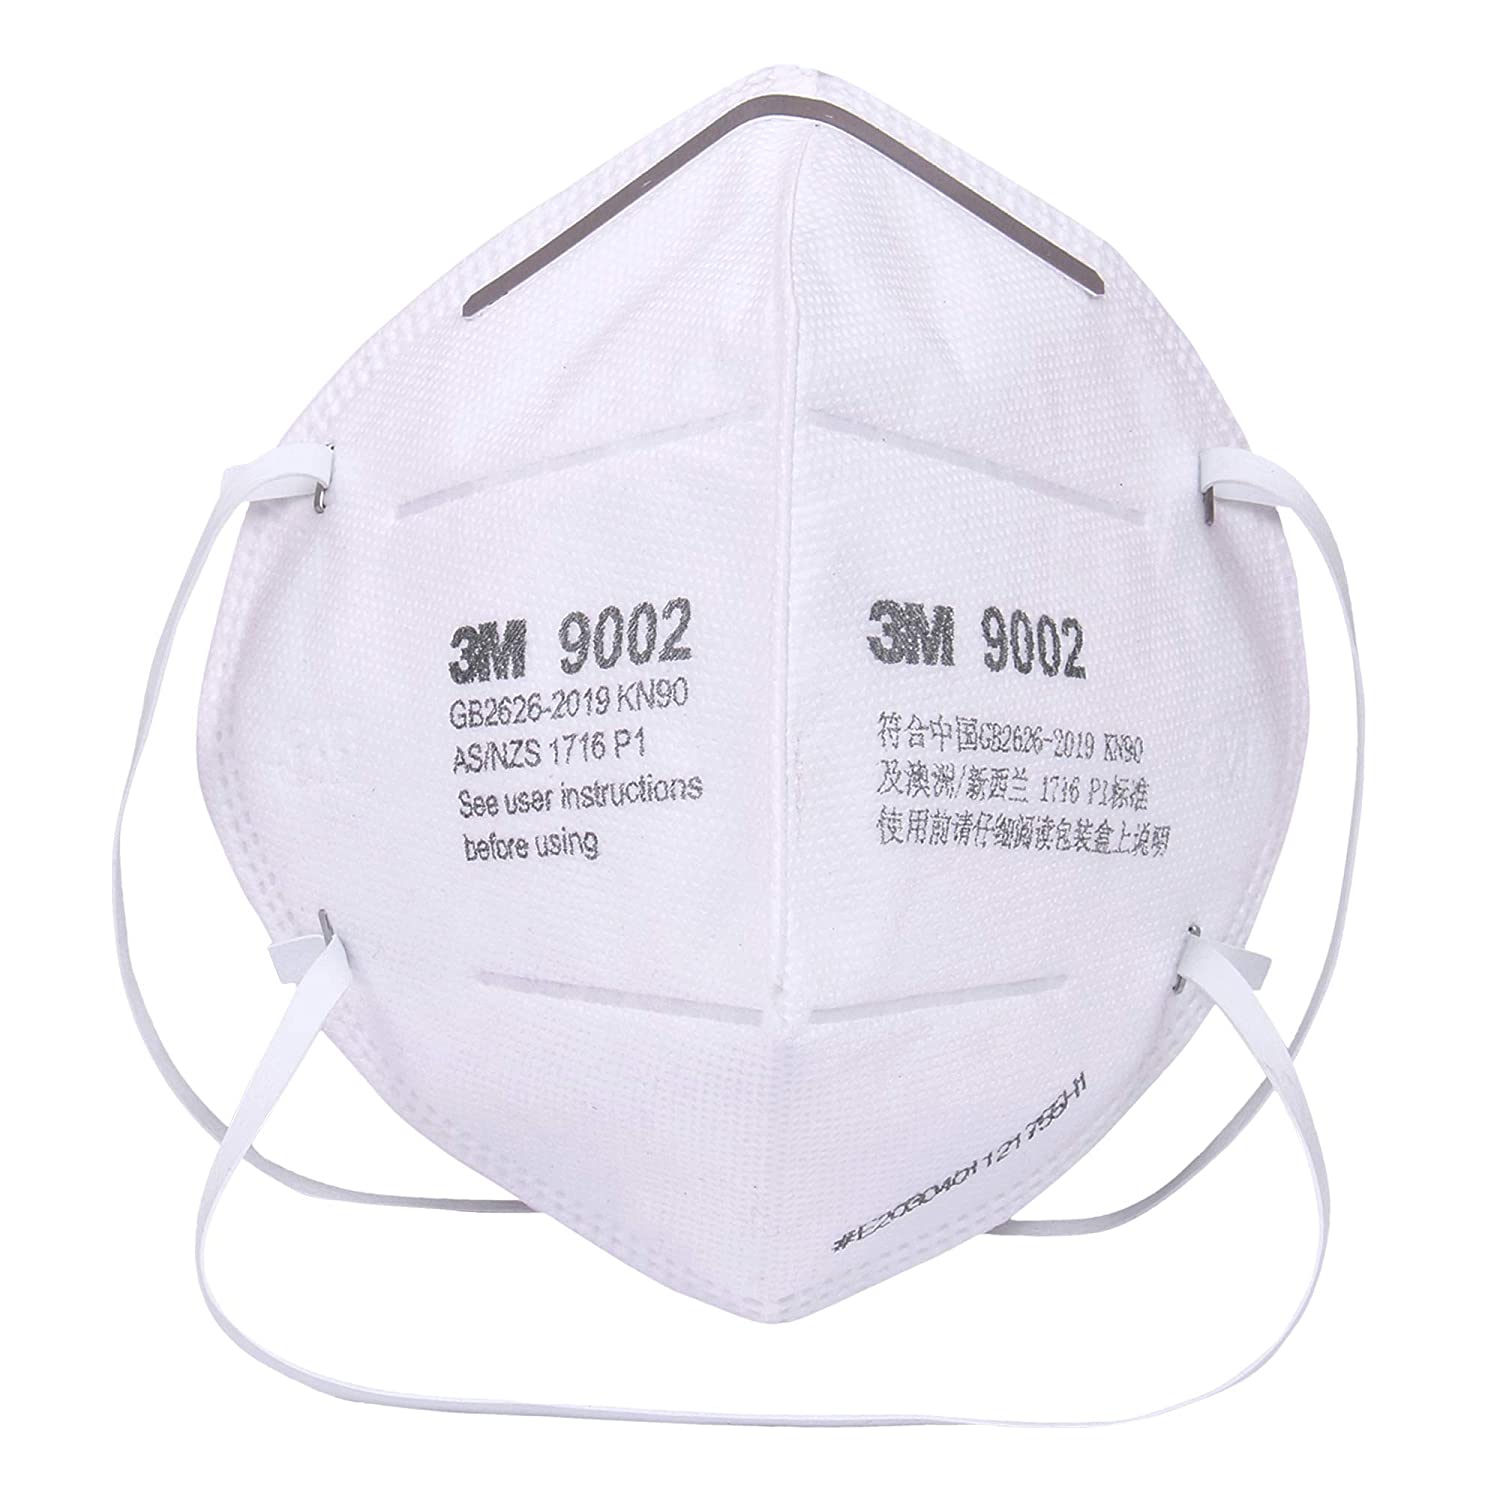 ( Dây đeo đầu) Khẩu trang 3M 9002 - Khẩu trang 3D Mask chống bụi mịn, phòng độc, chống giọt bắn